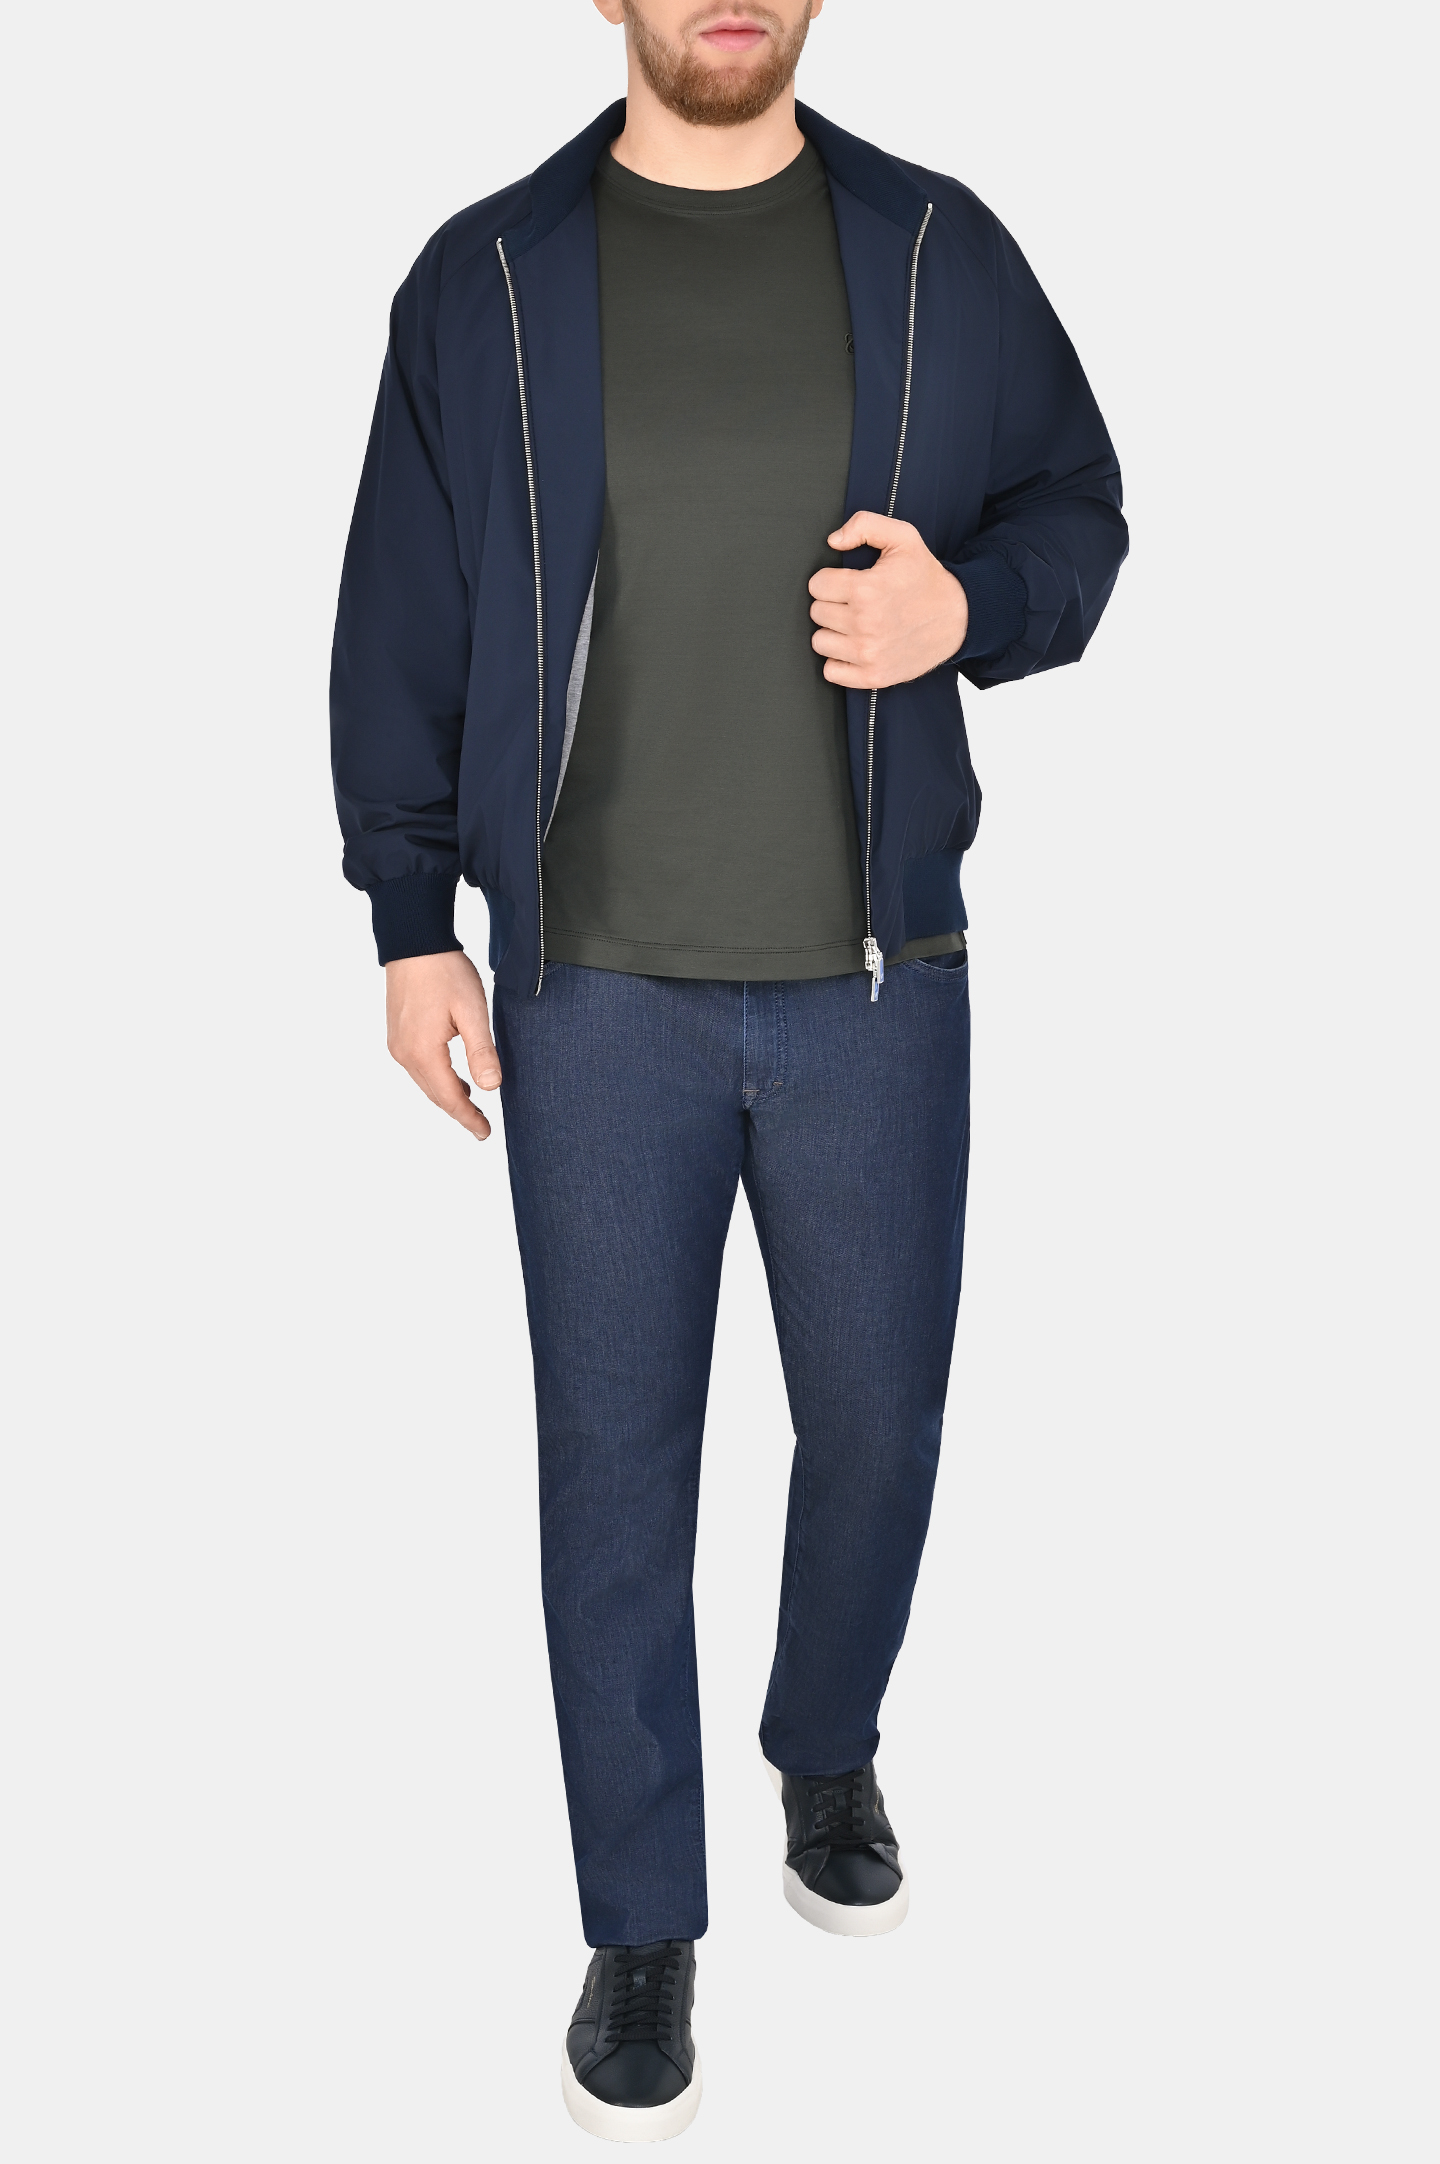 Куртка легкая с карманами CASTANGIA ES11, цвет: Темно-синий, Мужской